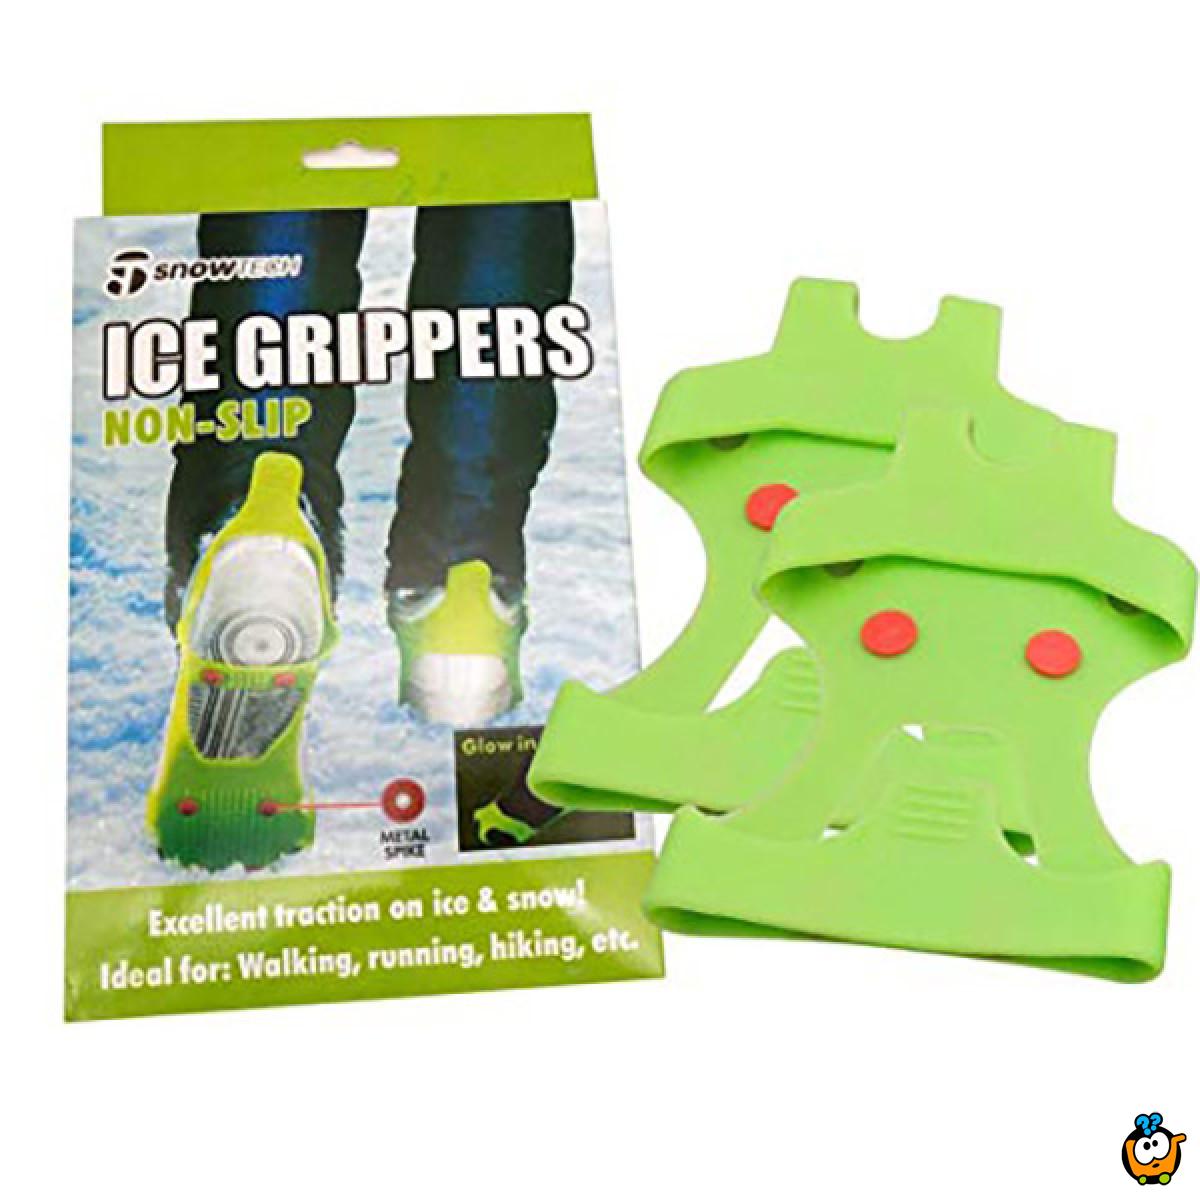 Ice grippers - Navlake za obuću protiv klizanja na snegu i ledu